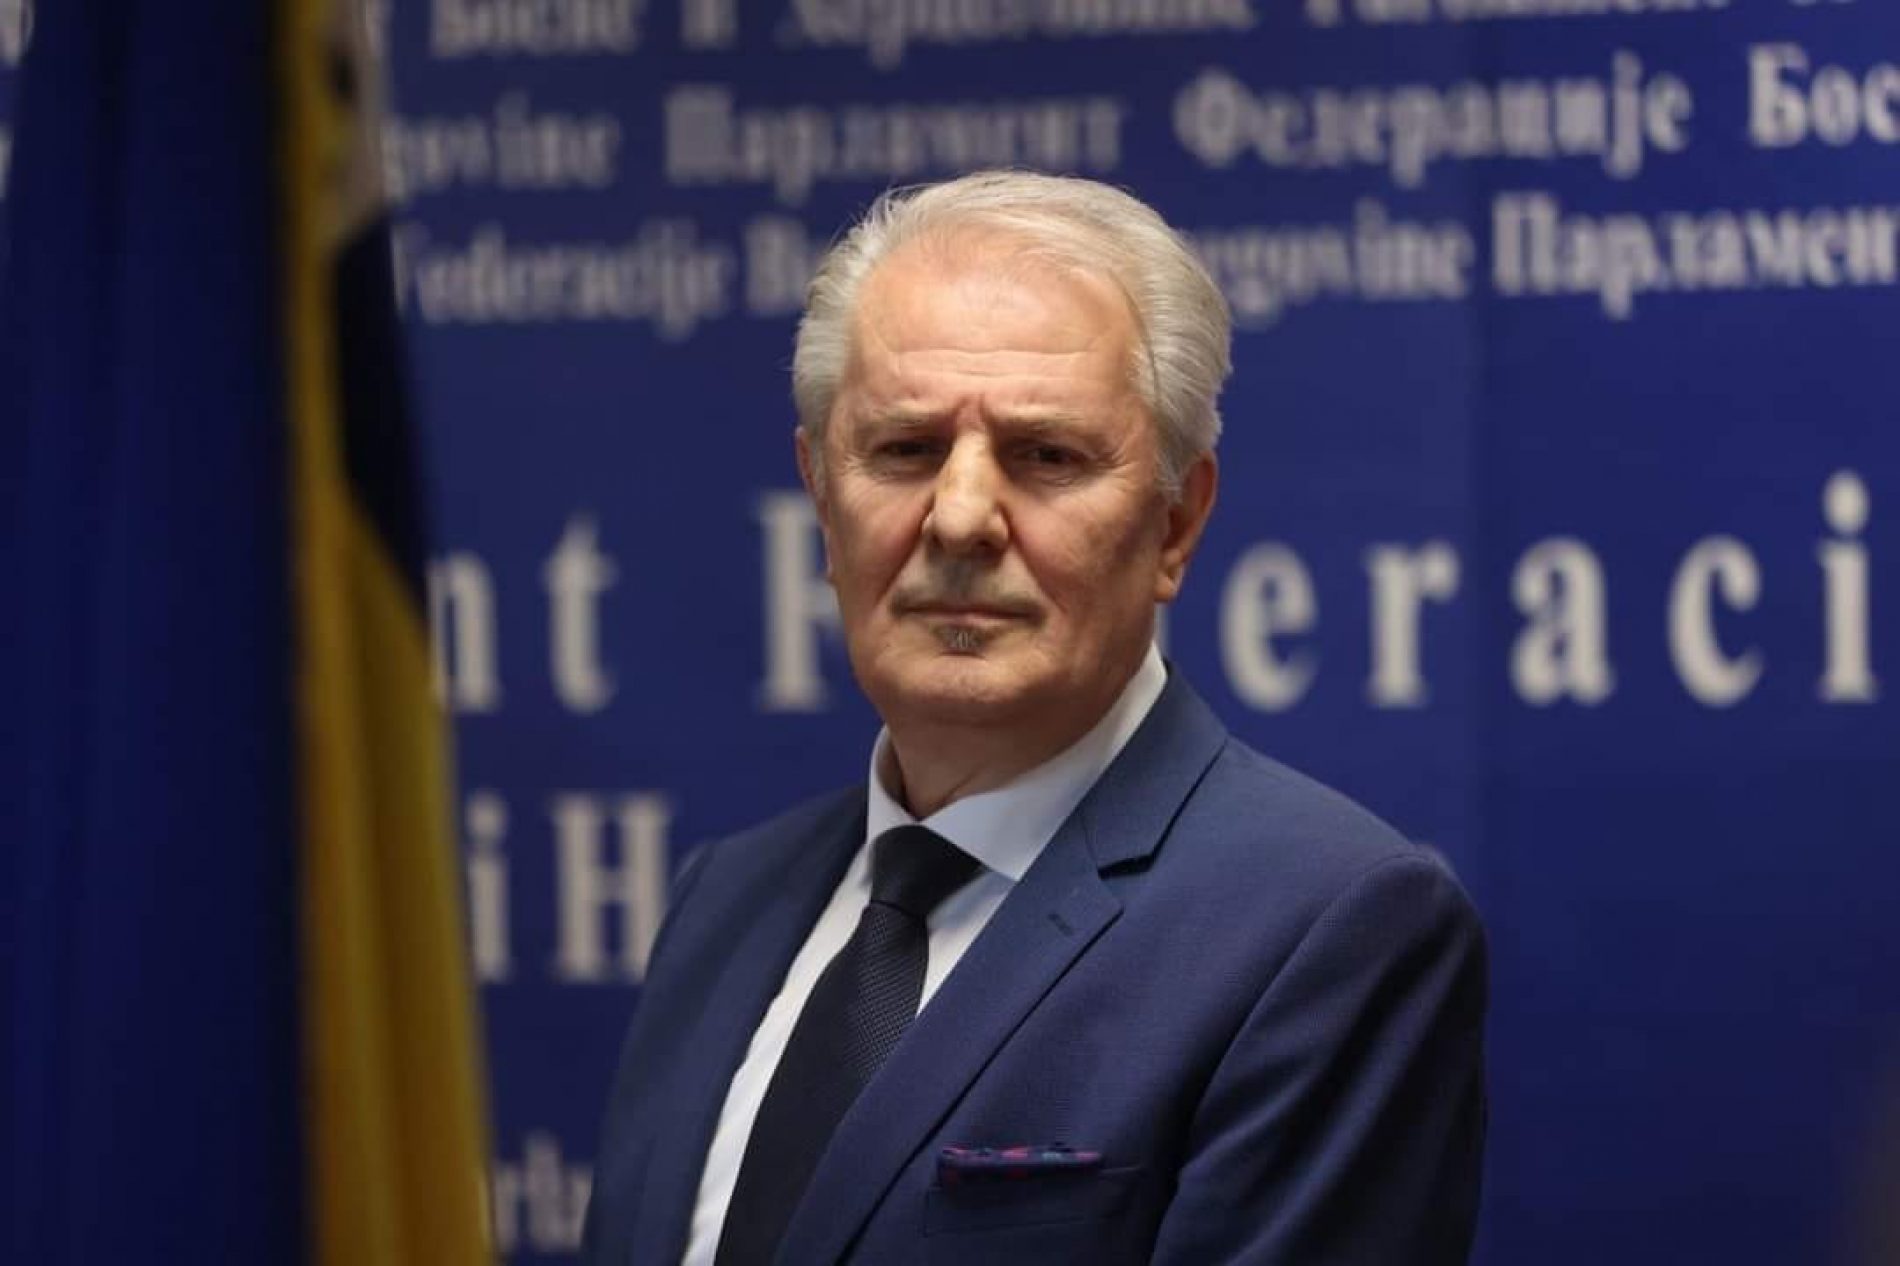 Lendo: Koristit ću sve ovlasti i mehanizme da zaštitim bošnjački narod